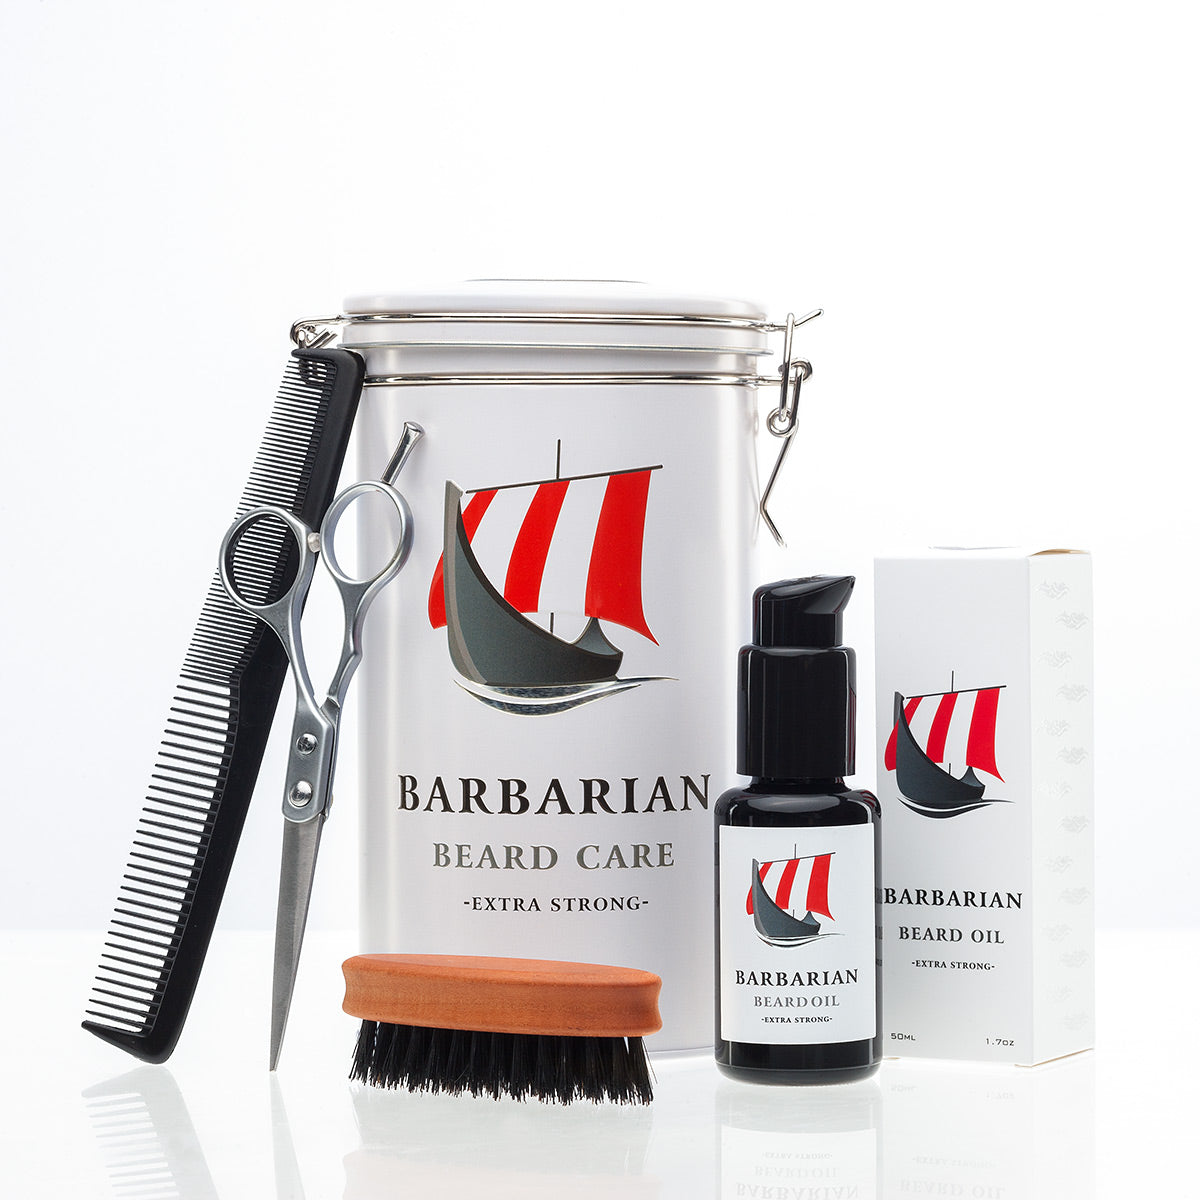 Barbarian Bartpflege Set de Luxe